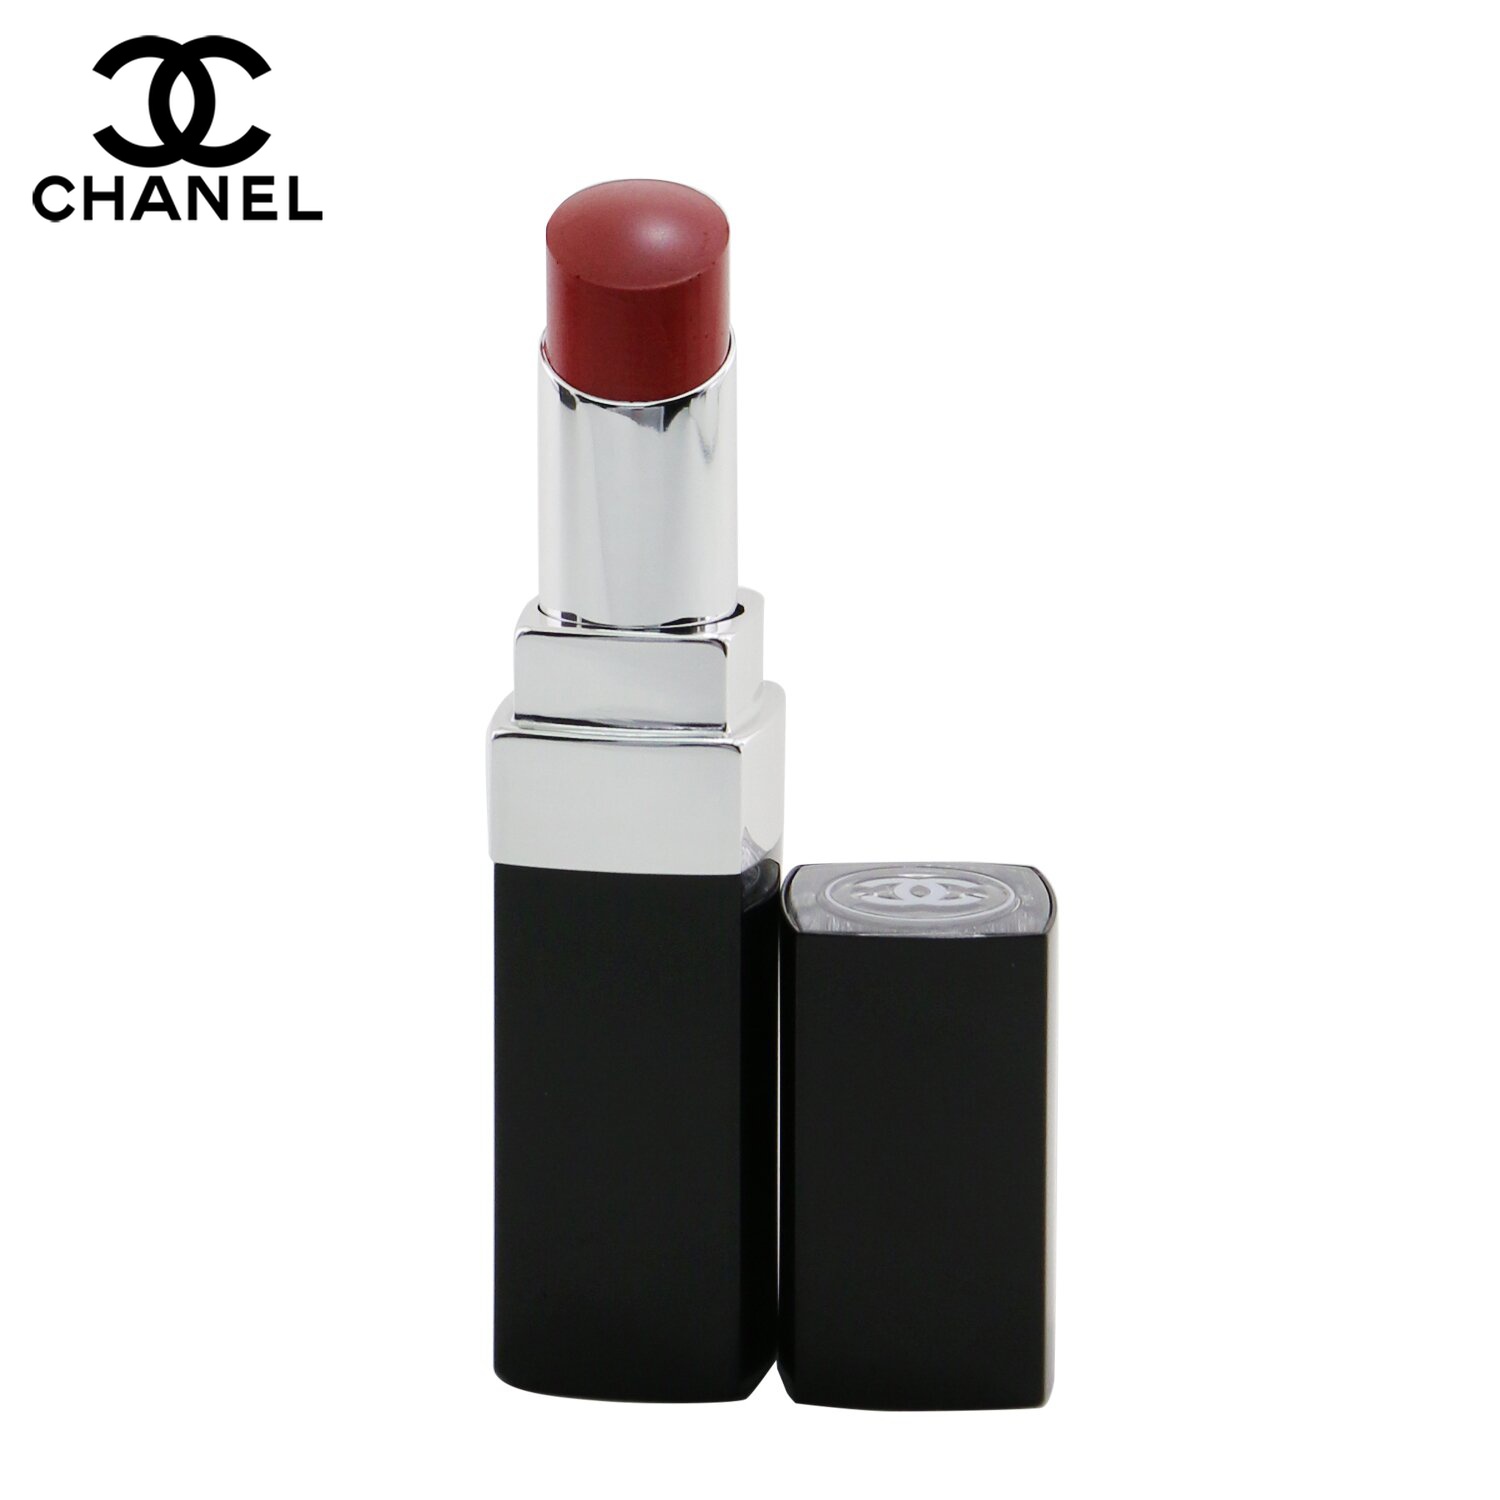 シャネル リップスティック Chanel 口紅 Rouge Coco Bloom Hydrating Plumping Intense Shine Lip Colour 124 Merveille 3g メイクアップ リップ 落ちにくい 誕生日プレゼント ギフト 人気 ブランド コスメ 永遠の定番